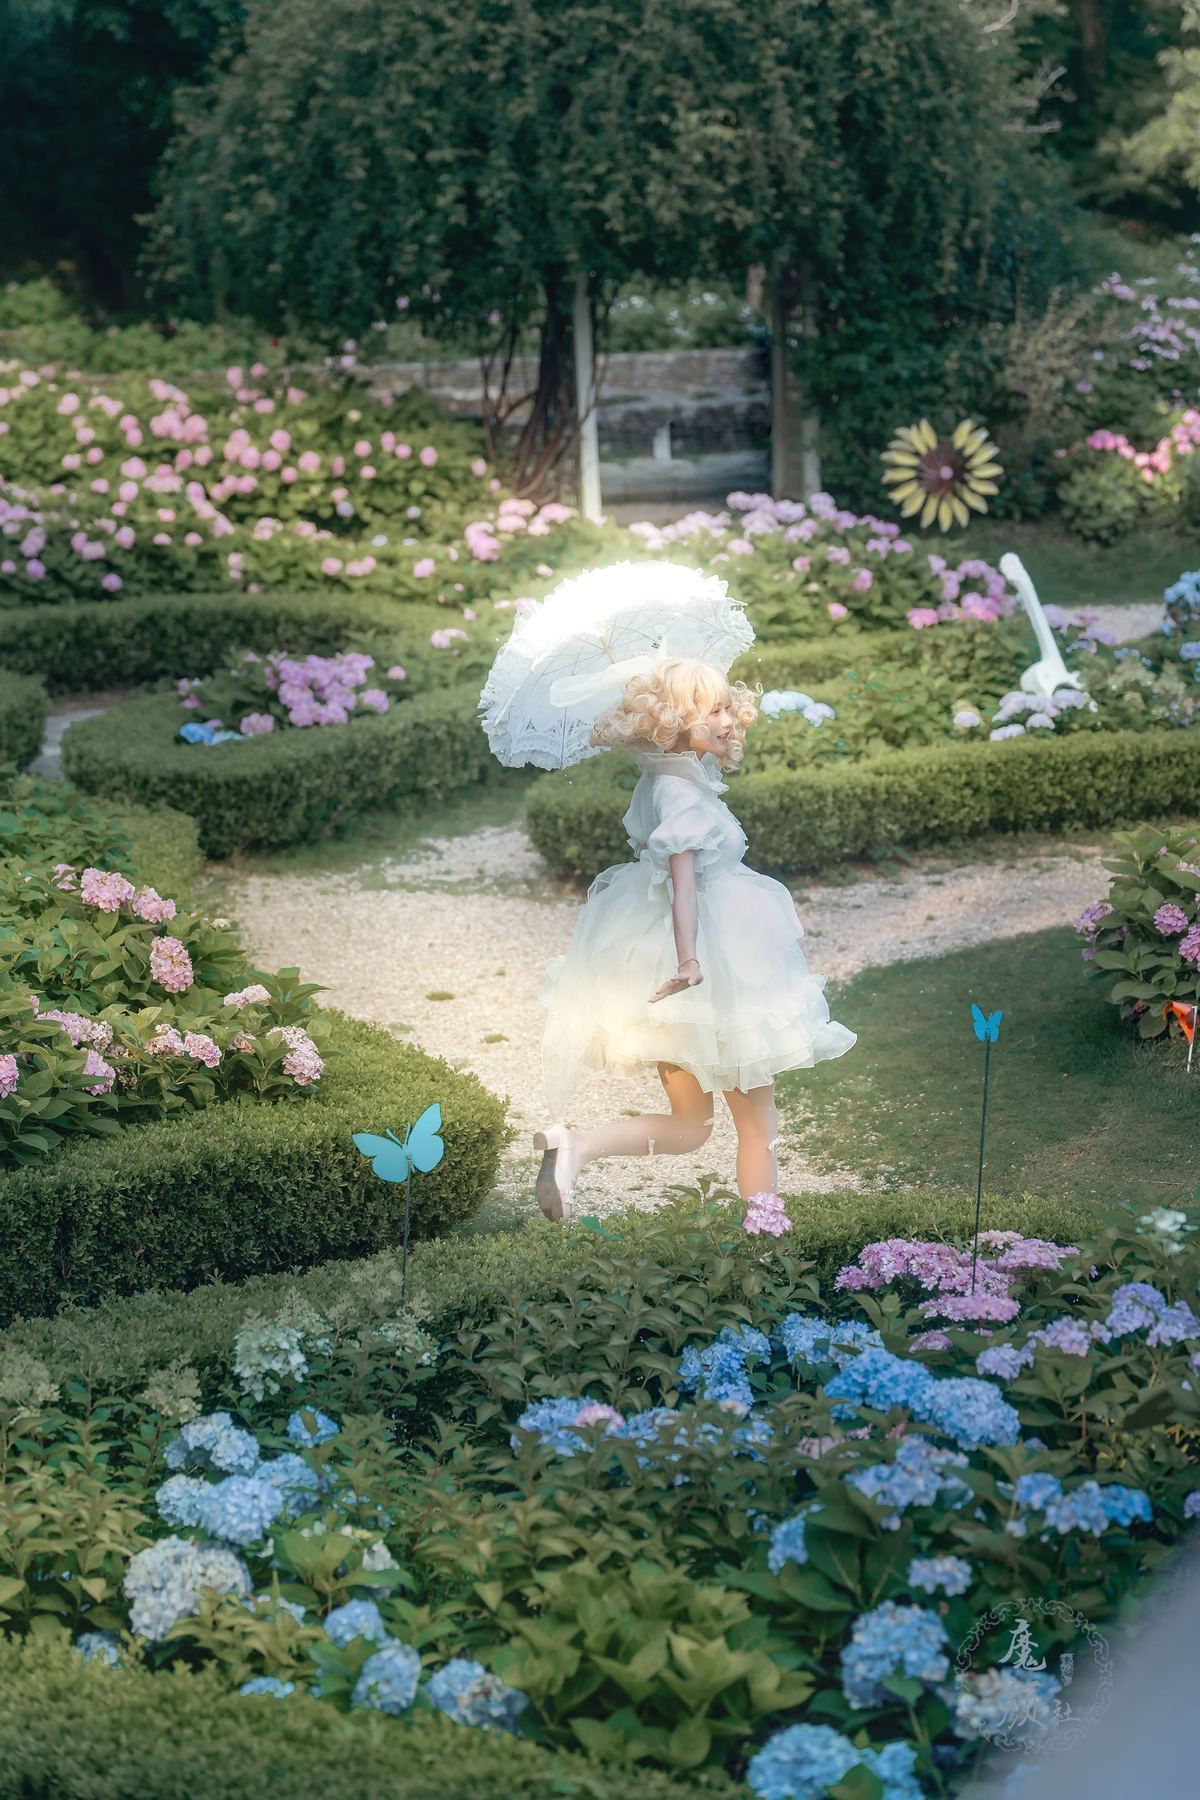 一位穿白裙子的女人在花丛中拿着一把伞